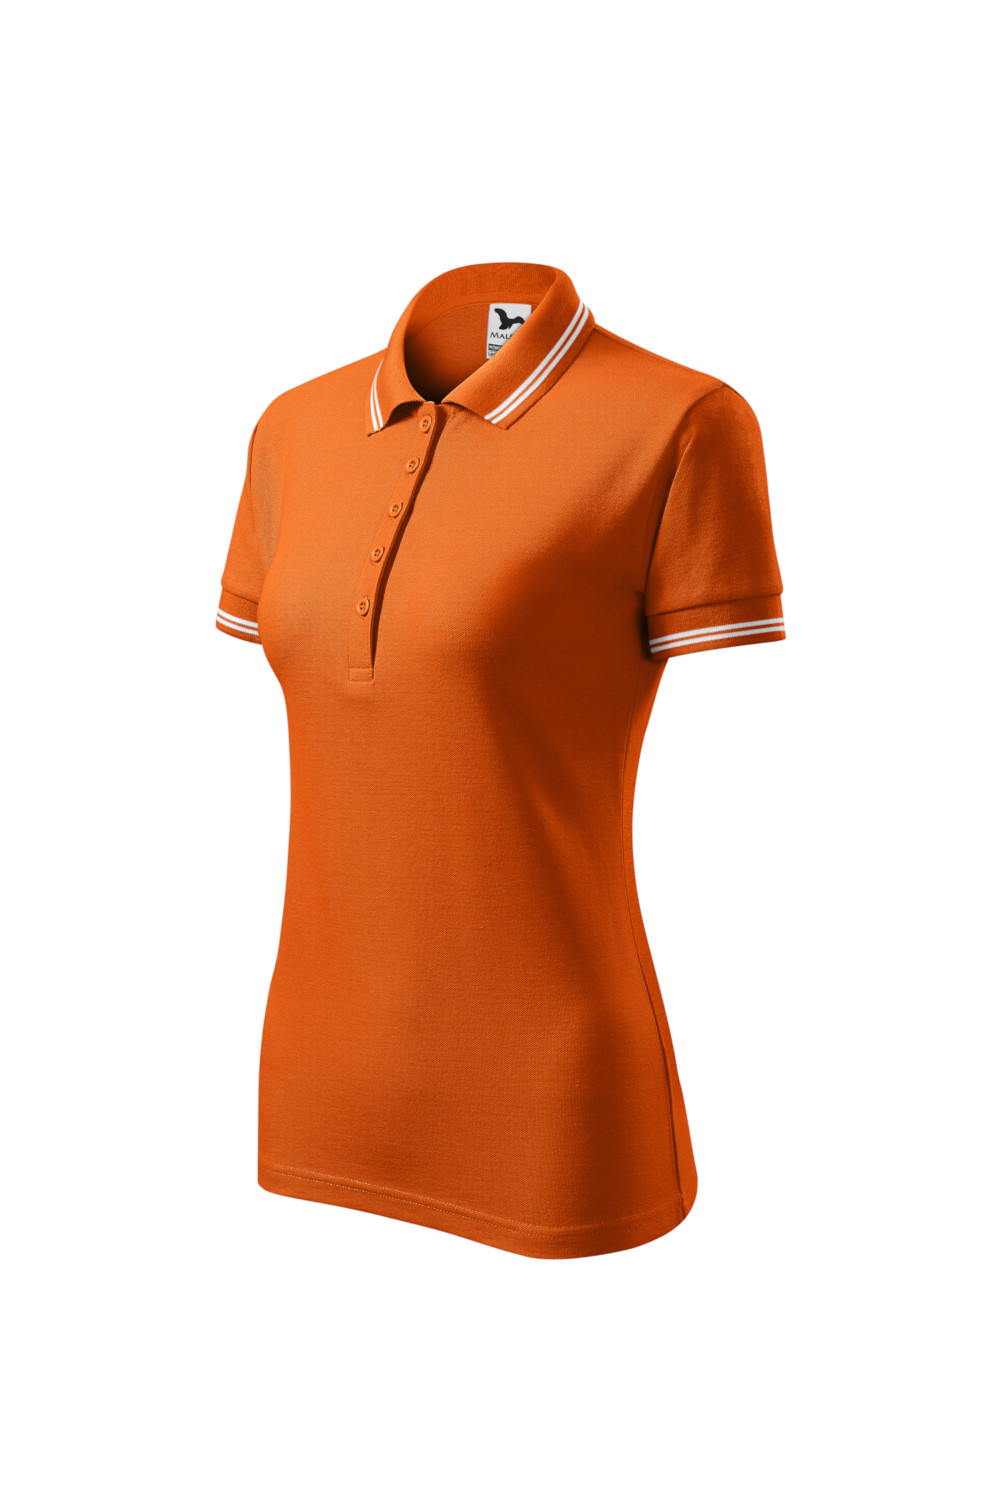 Koszulka Polo damska 65% bawełna 35% poliester URBAN 220 polo pomarańczowy